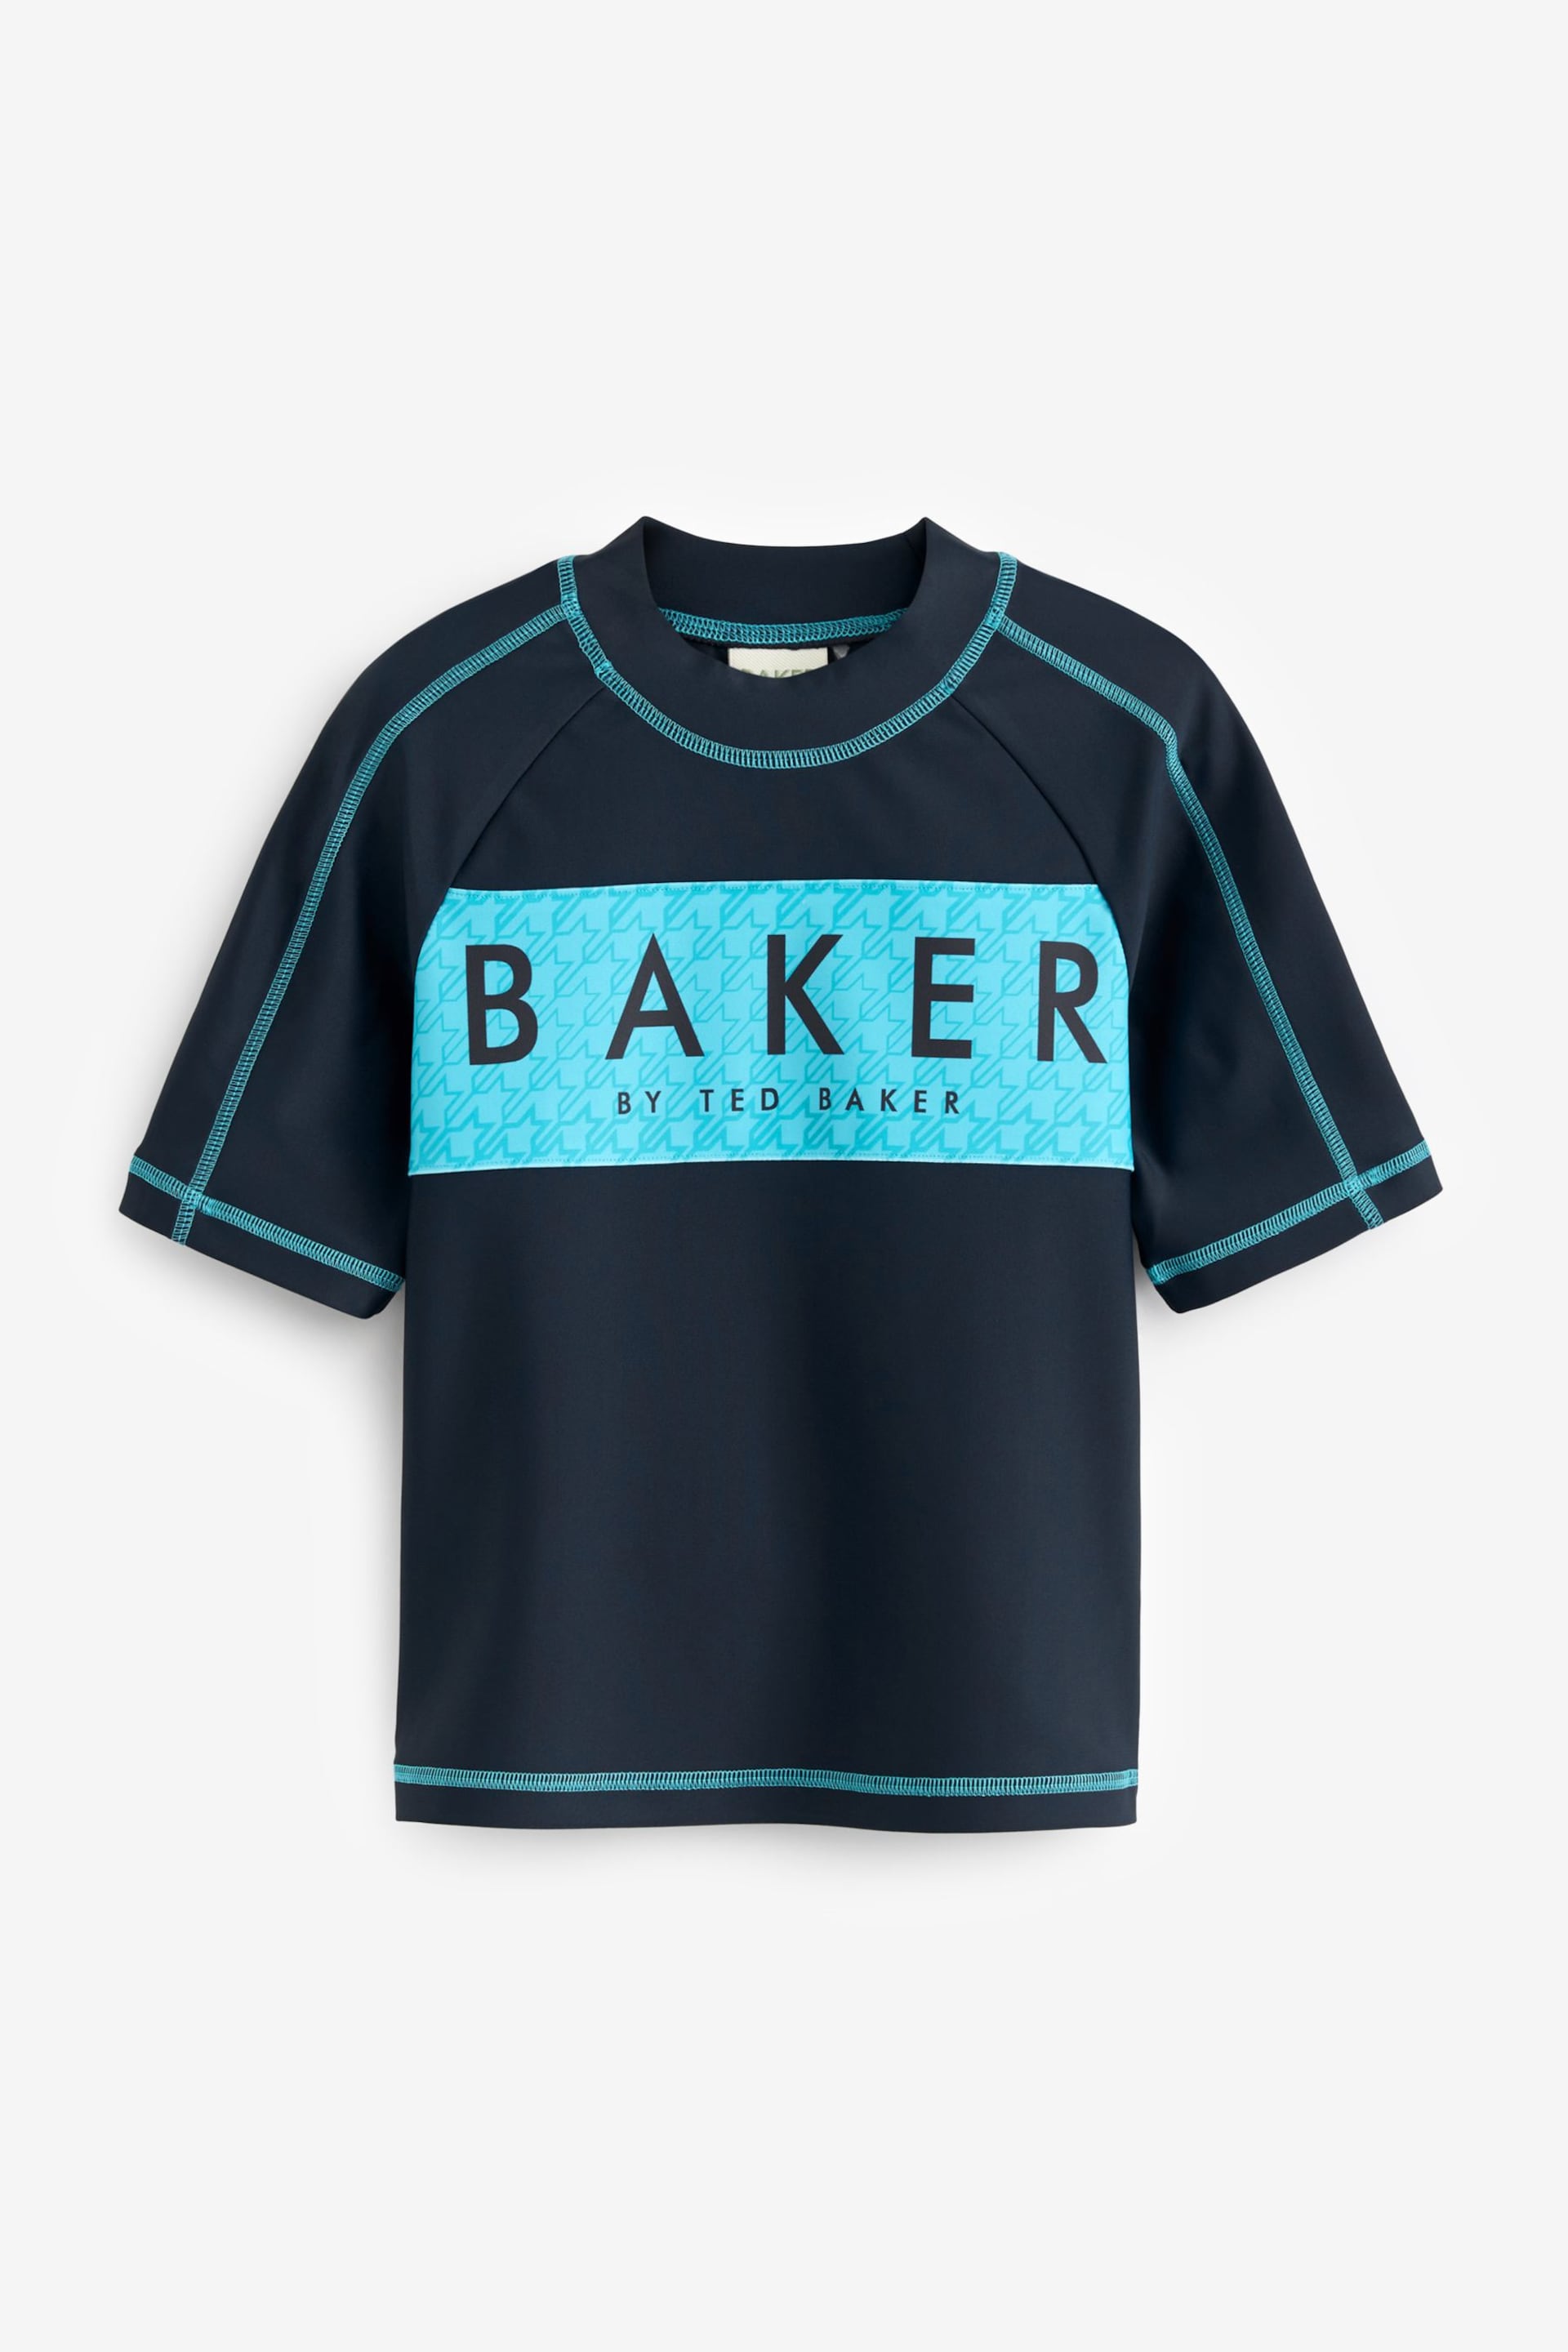 Baker by Ted Baker Rash Swim Vest - Image 1 of 4